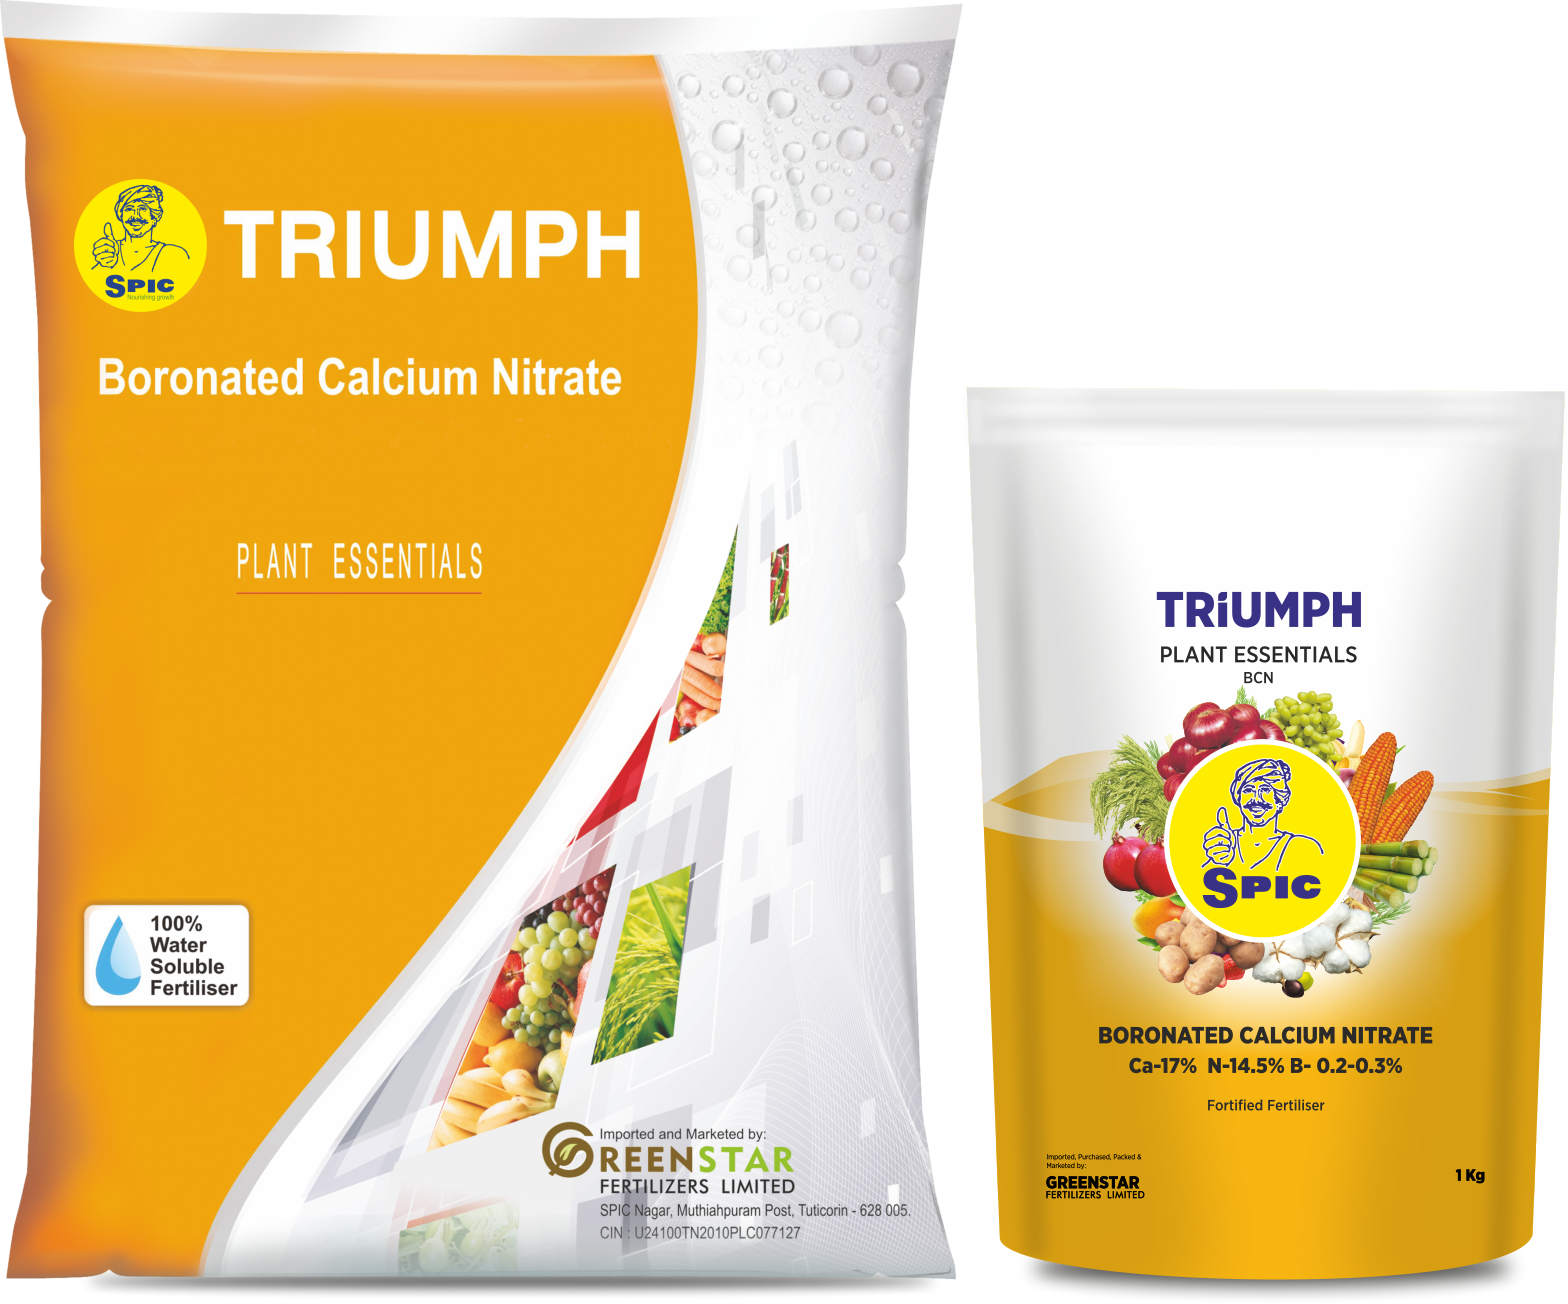 SPIC Triumph (Boronated Calcium Nitrate)